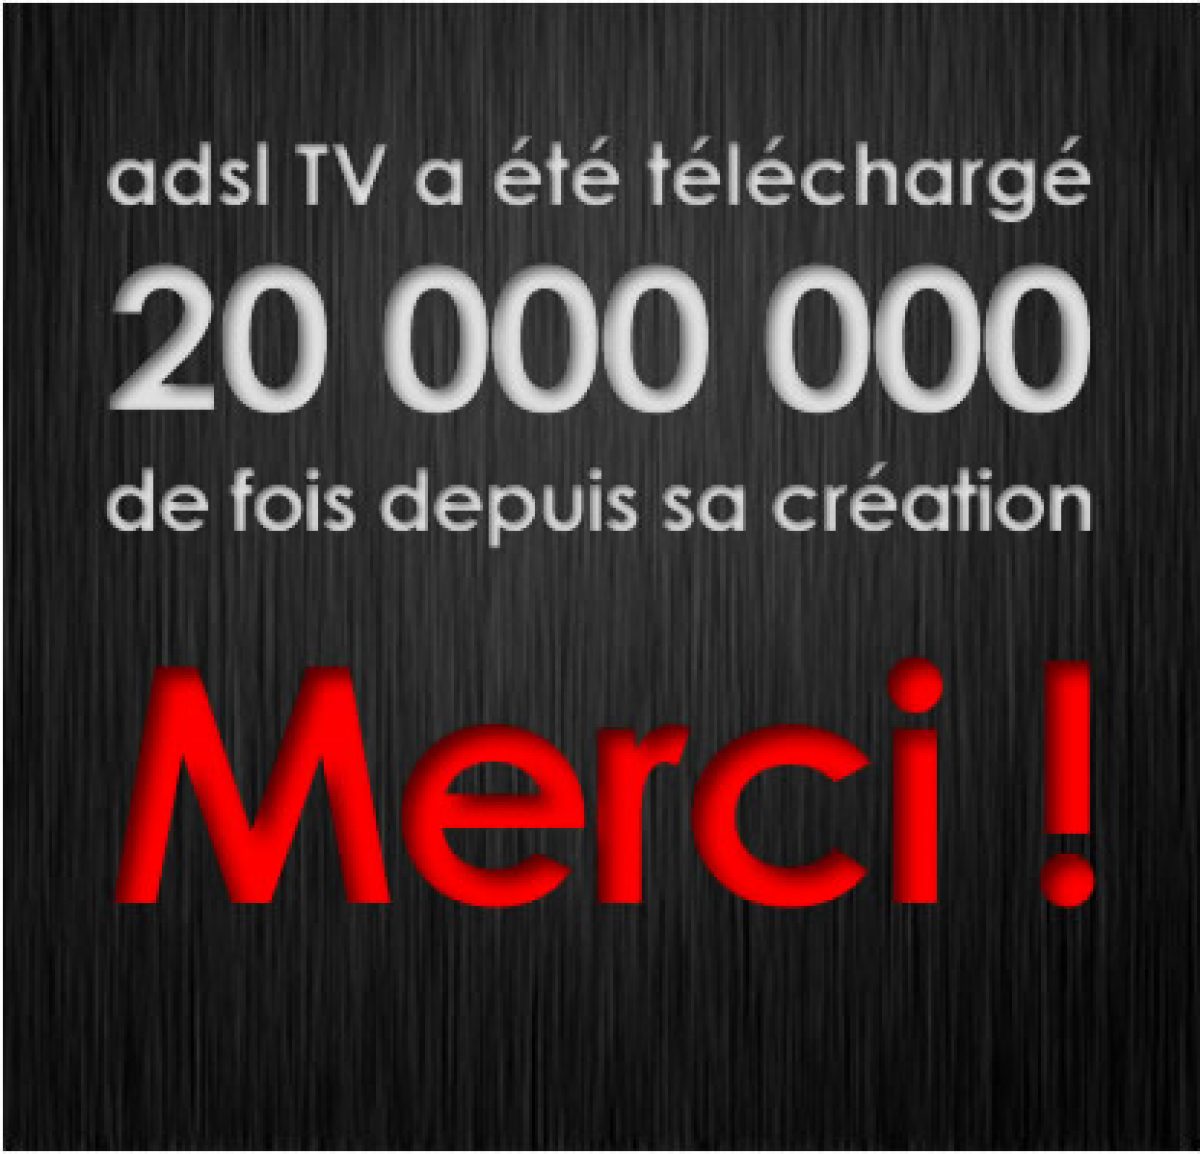 ADSL TV fête ses 20 millions de téléchargements !